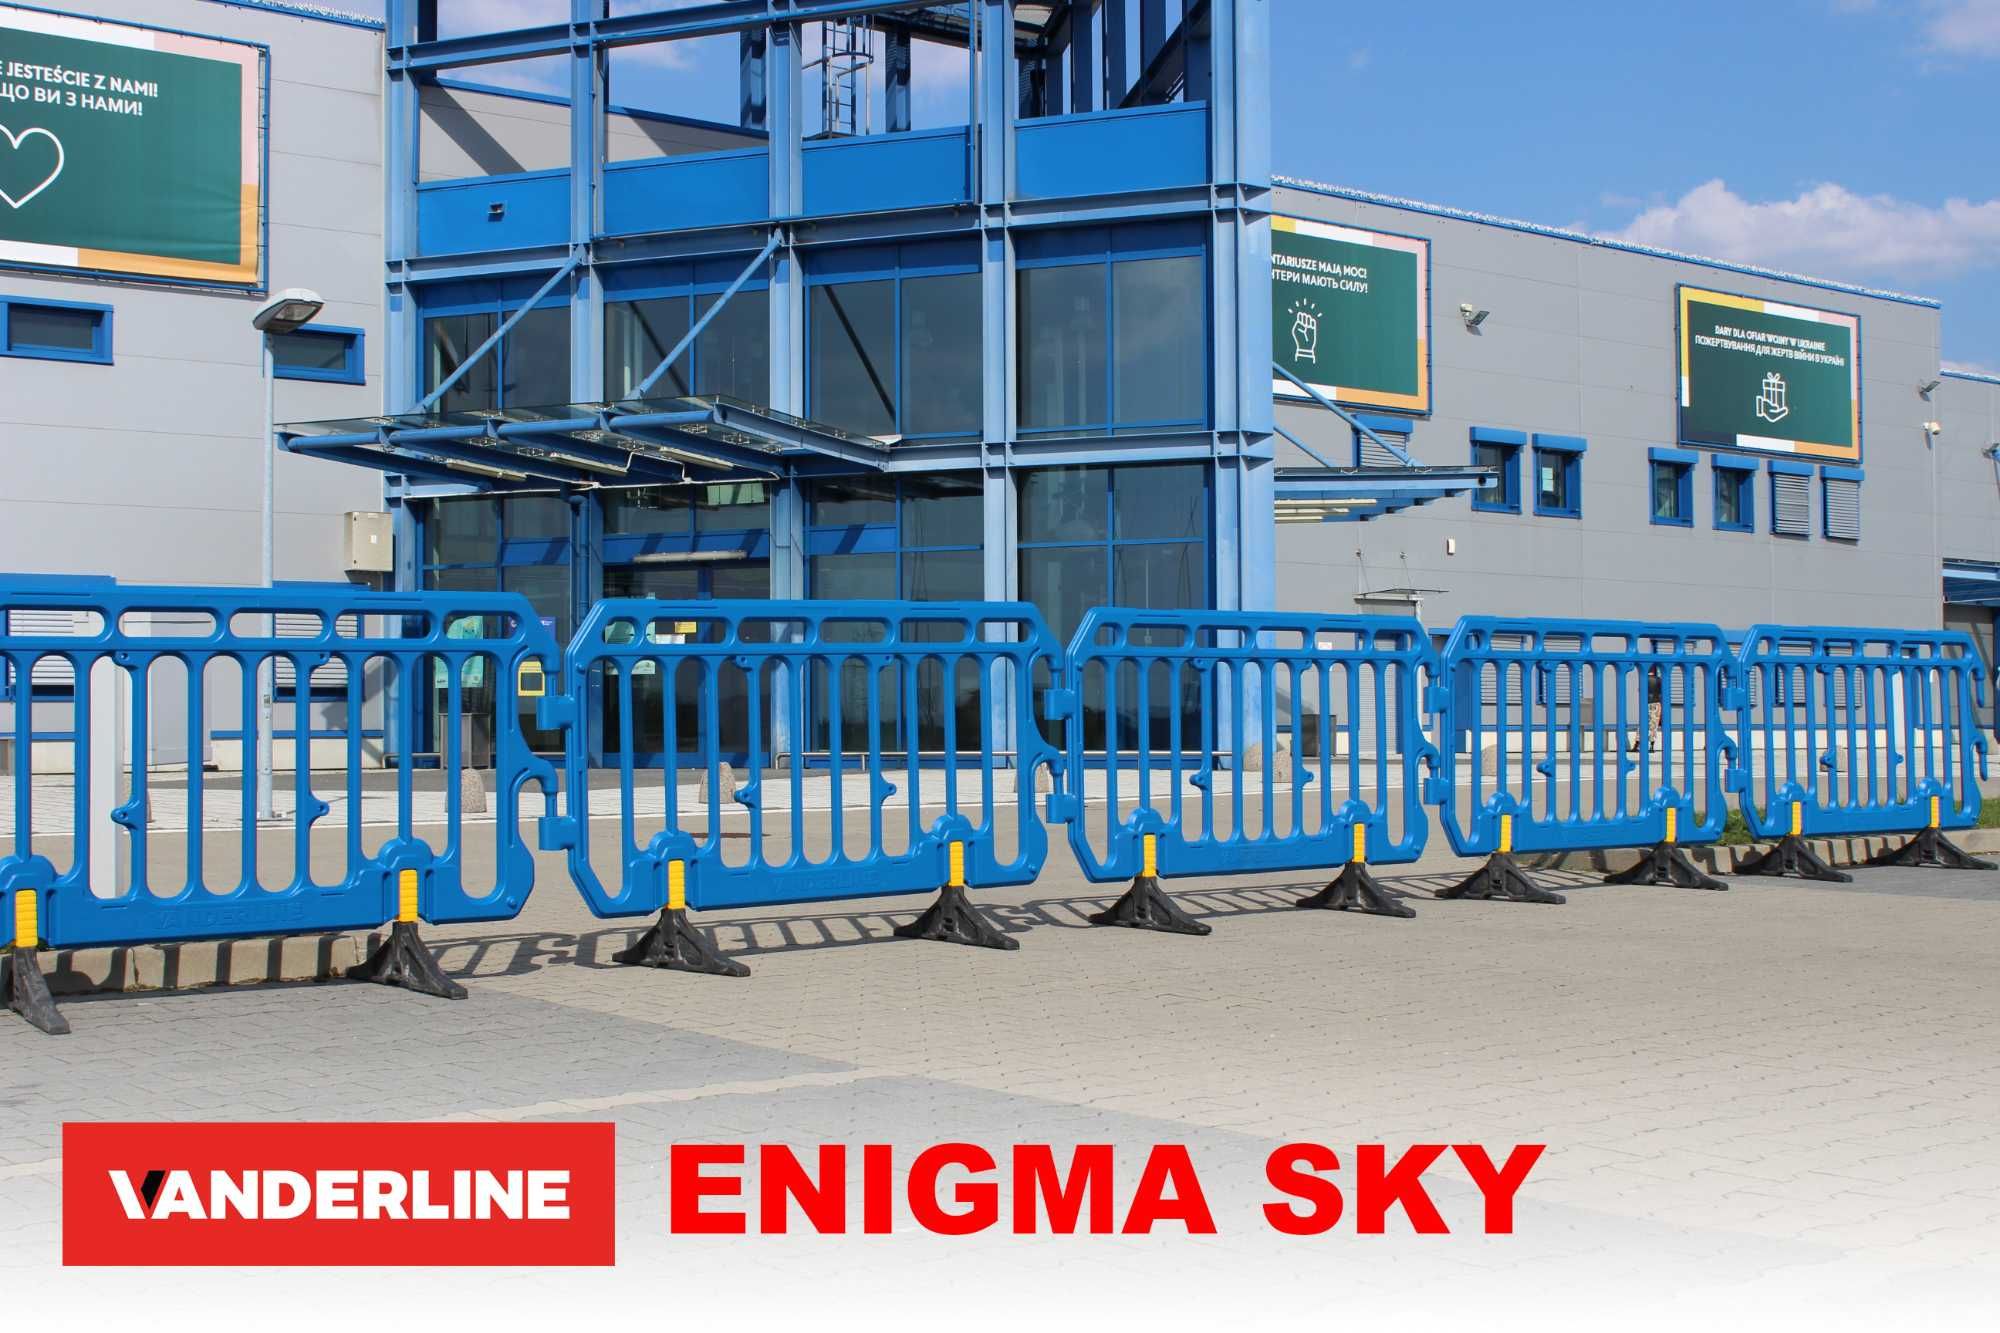 ENIGMA SKY - Nowa barierka tymczasowa, eventowa z tworzywa HDPE